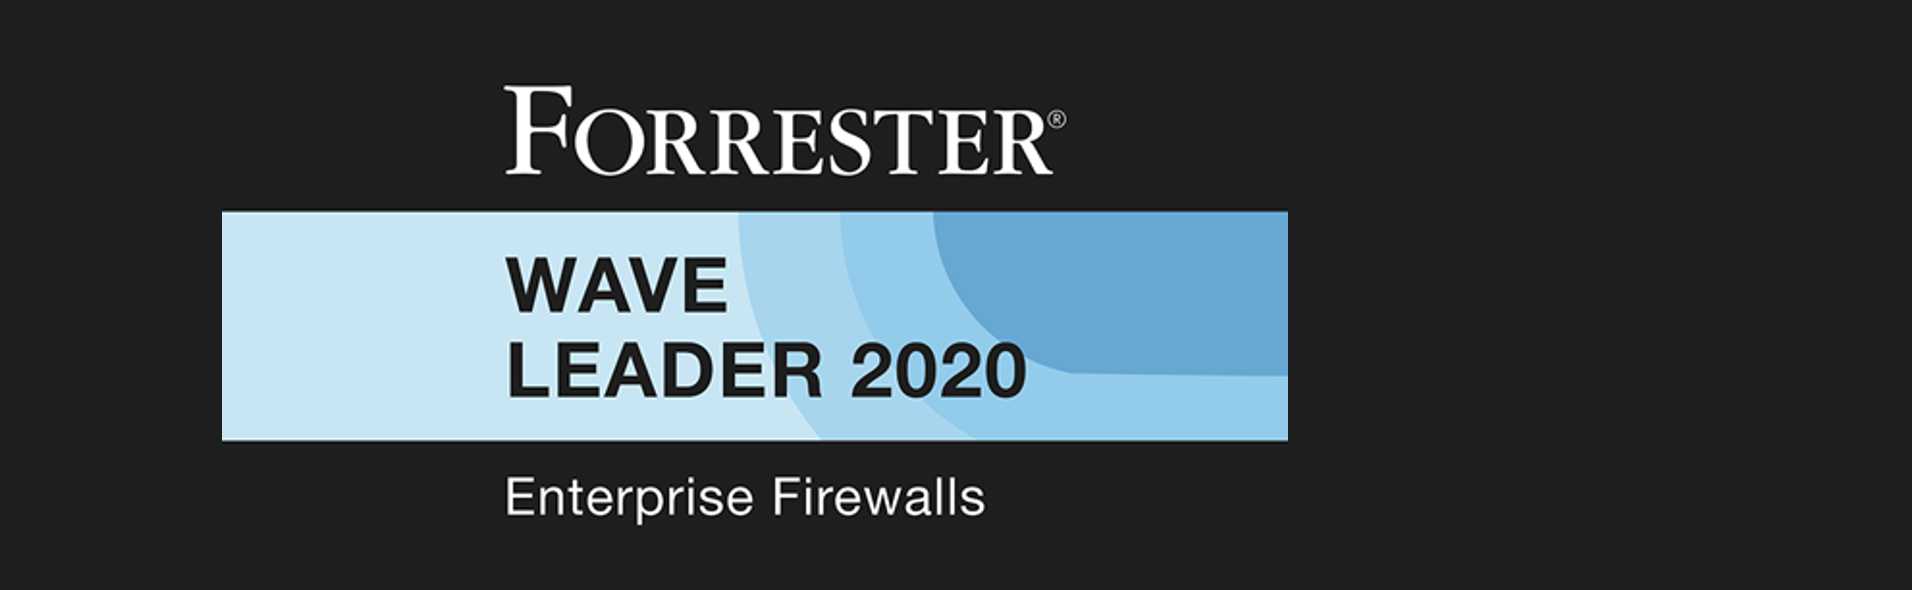 Cisco Named a Leader in the 2020 Forrester Wave for Enterprise Firewalls